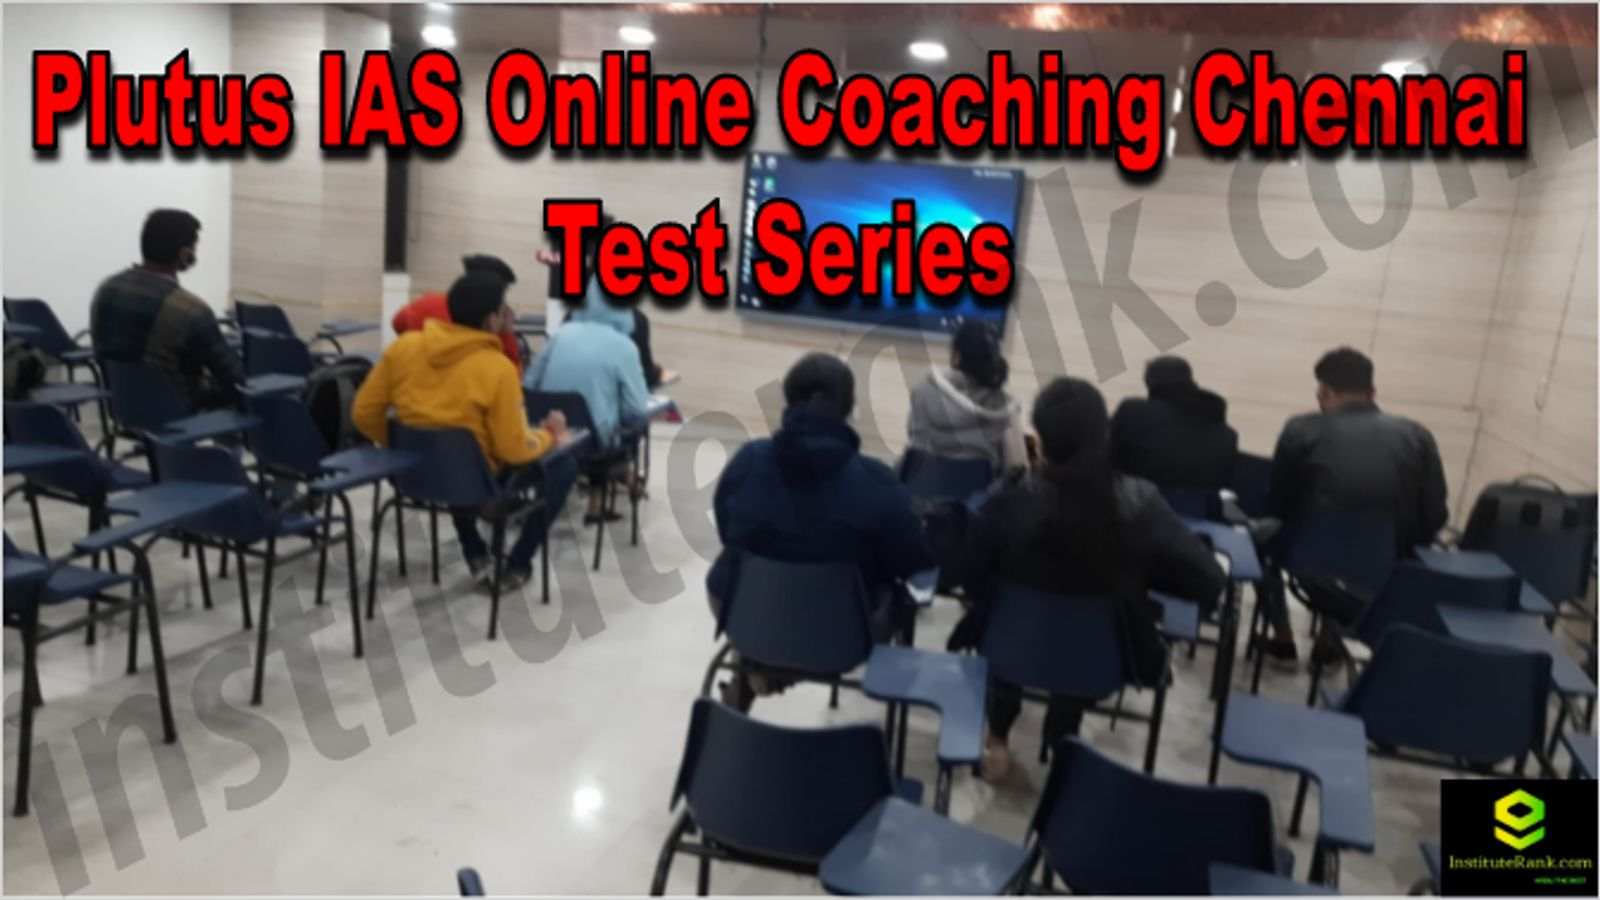 Plutus IAS Online Coaching Chennai Reviews Test Series